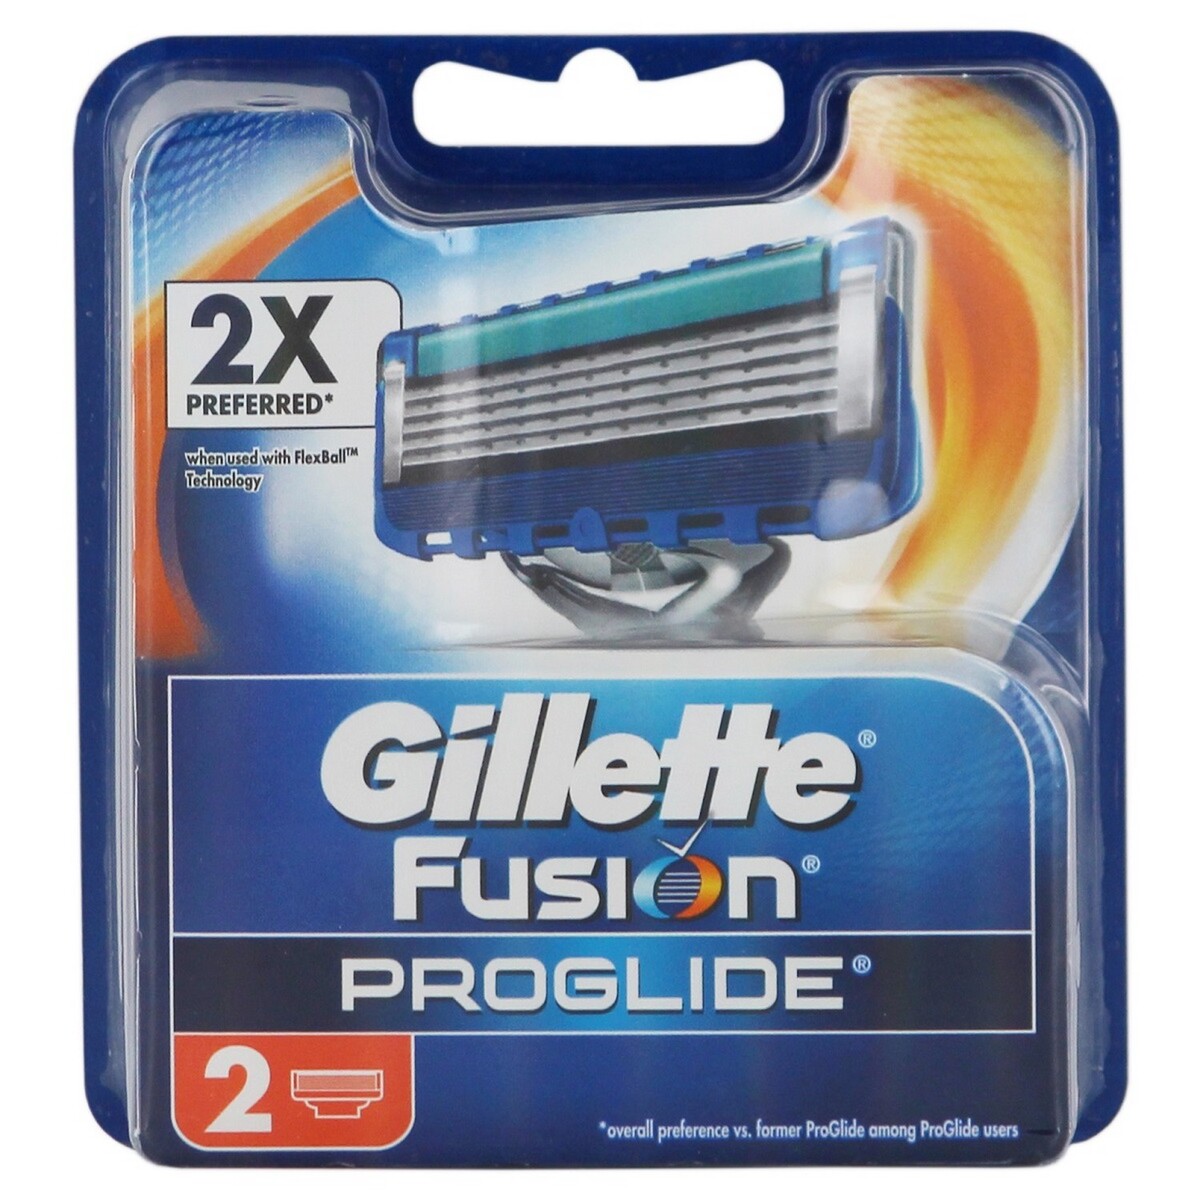 Gillette Cartrdge Fusion Pro Glide 2's